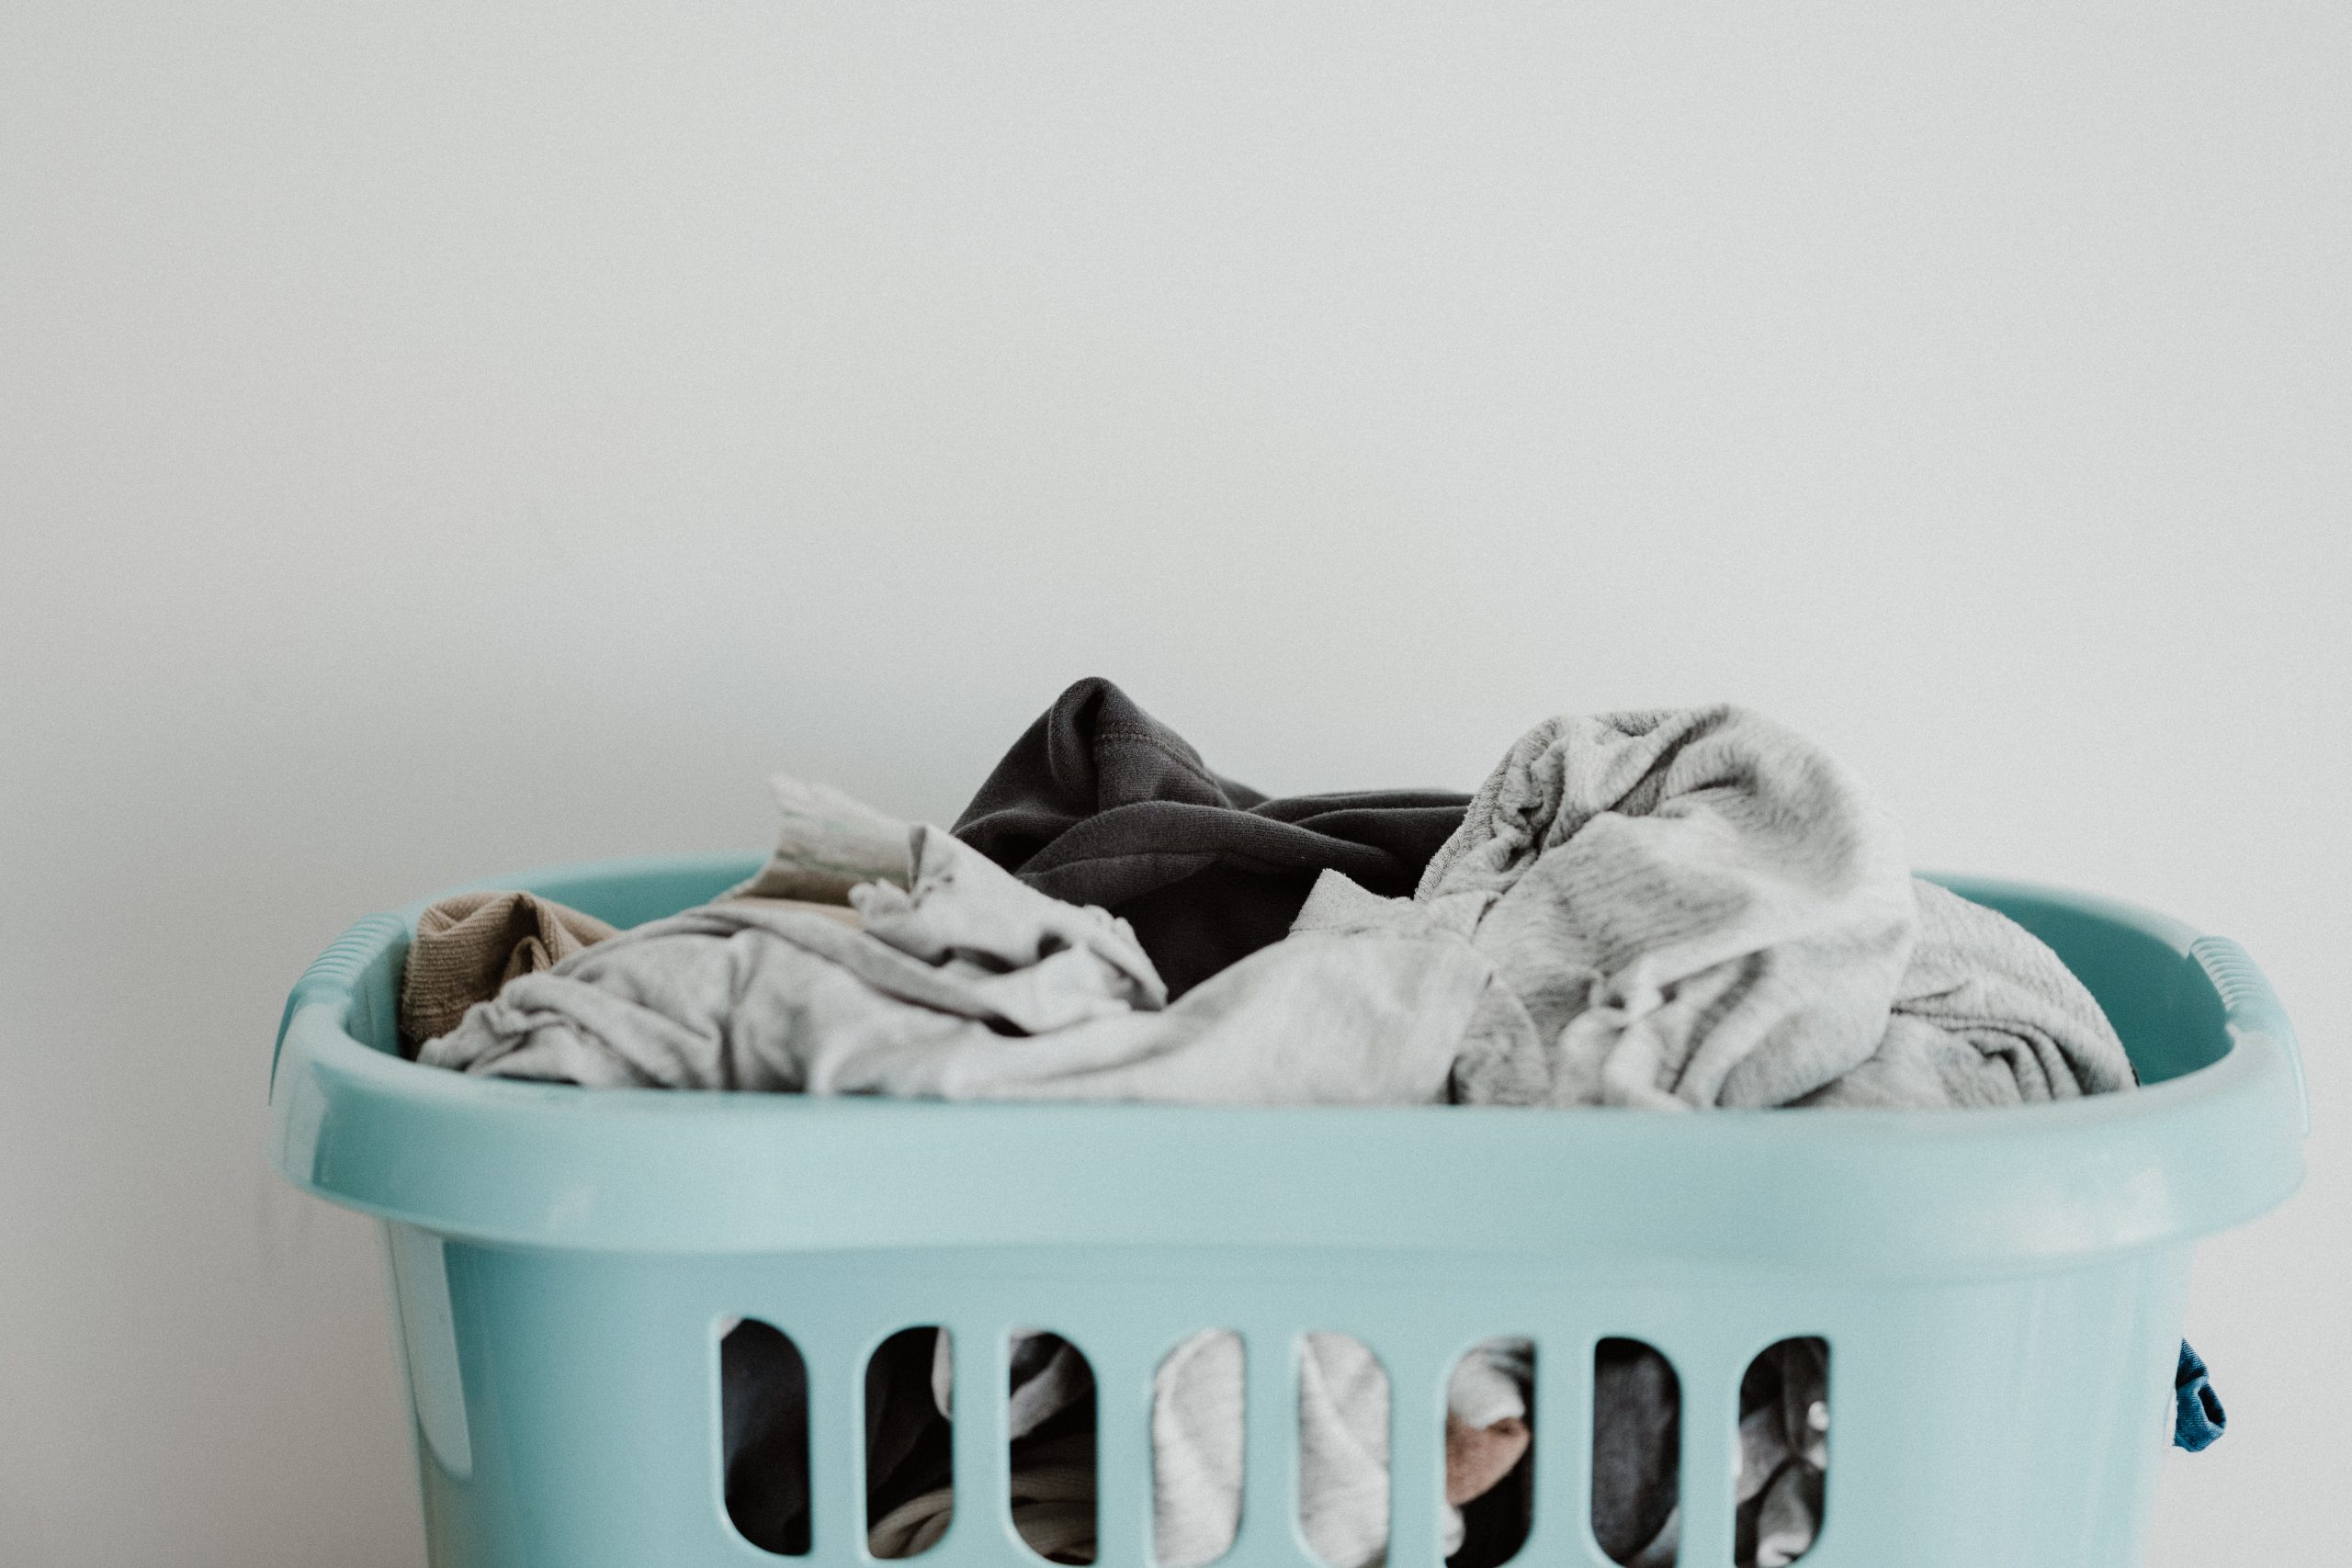 Comment faire sa propre lessive maison ? 1